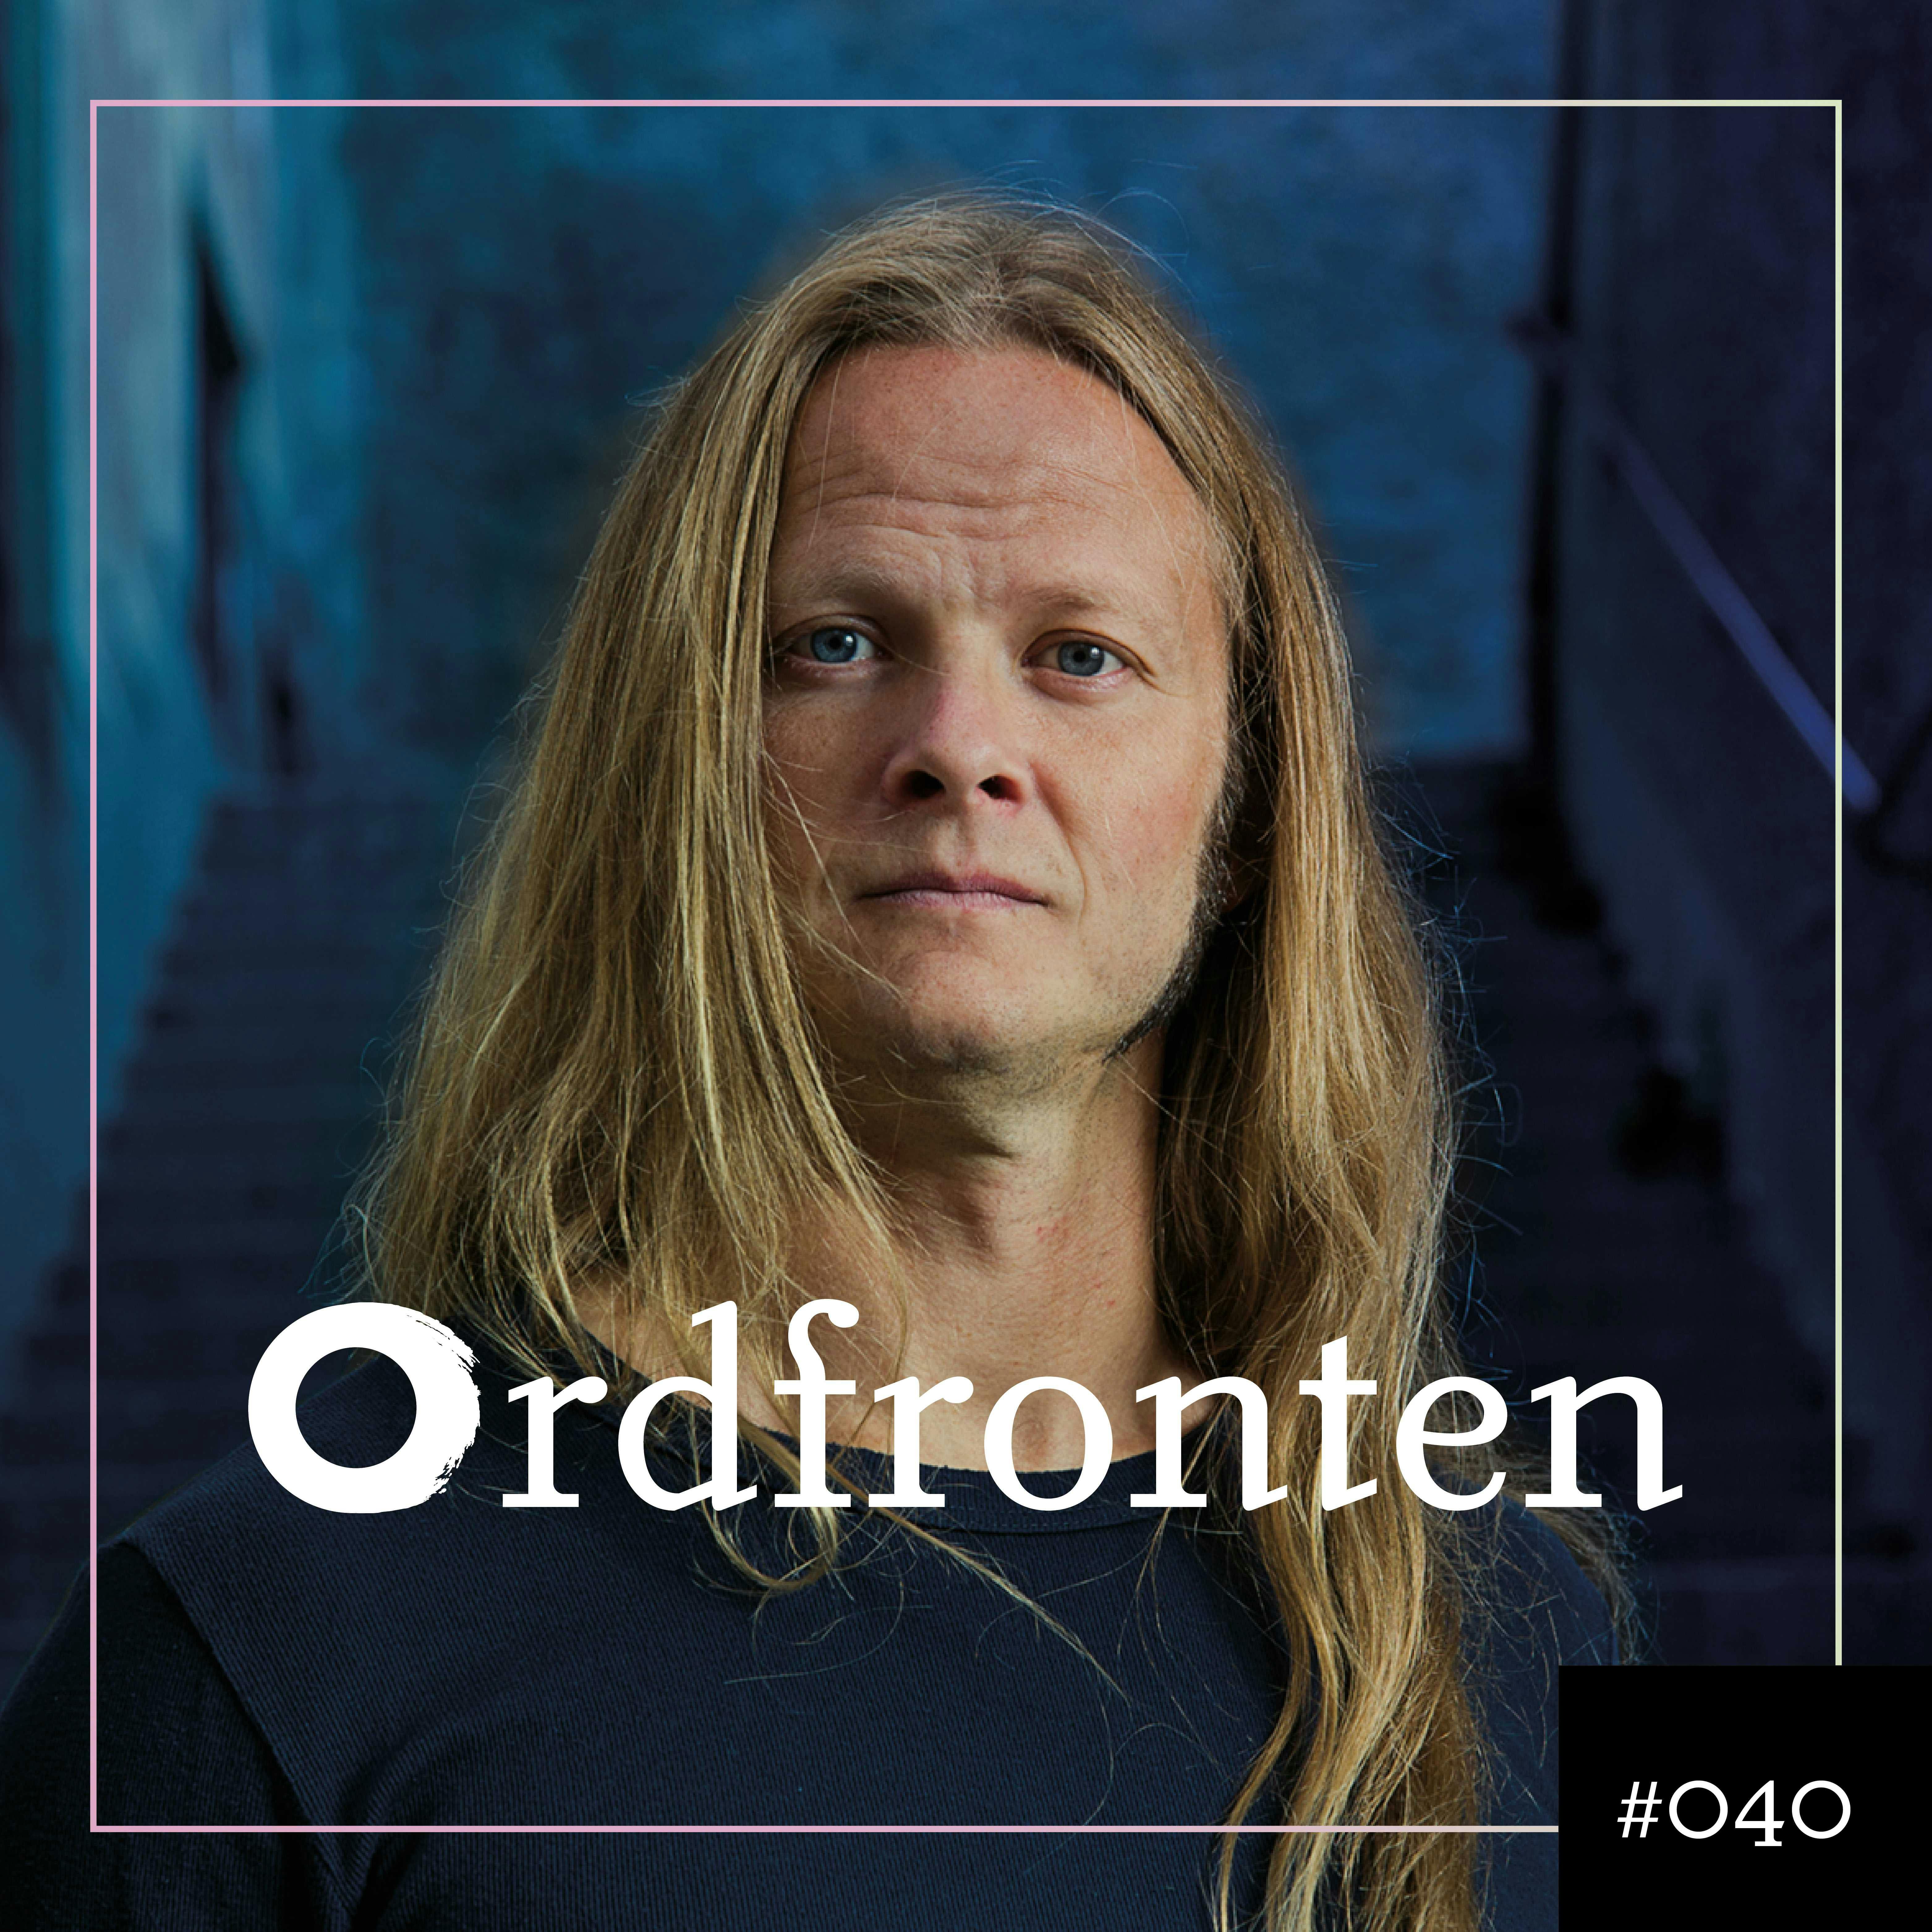 Ordfronten #40 : Herman Geijer om Överlev katastrofen - undefined